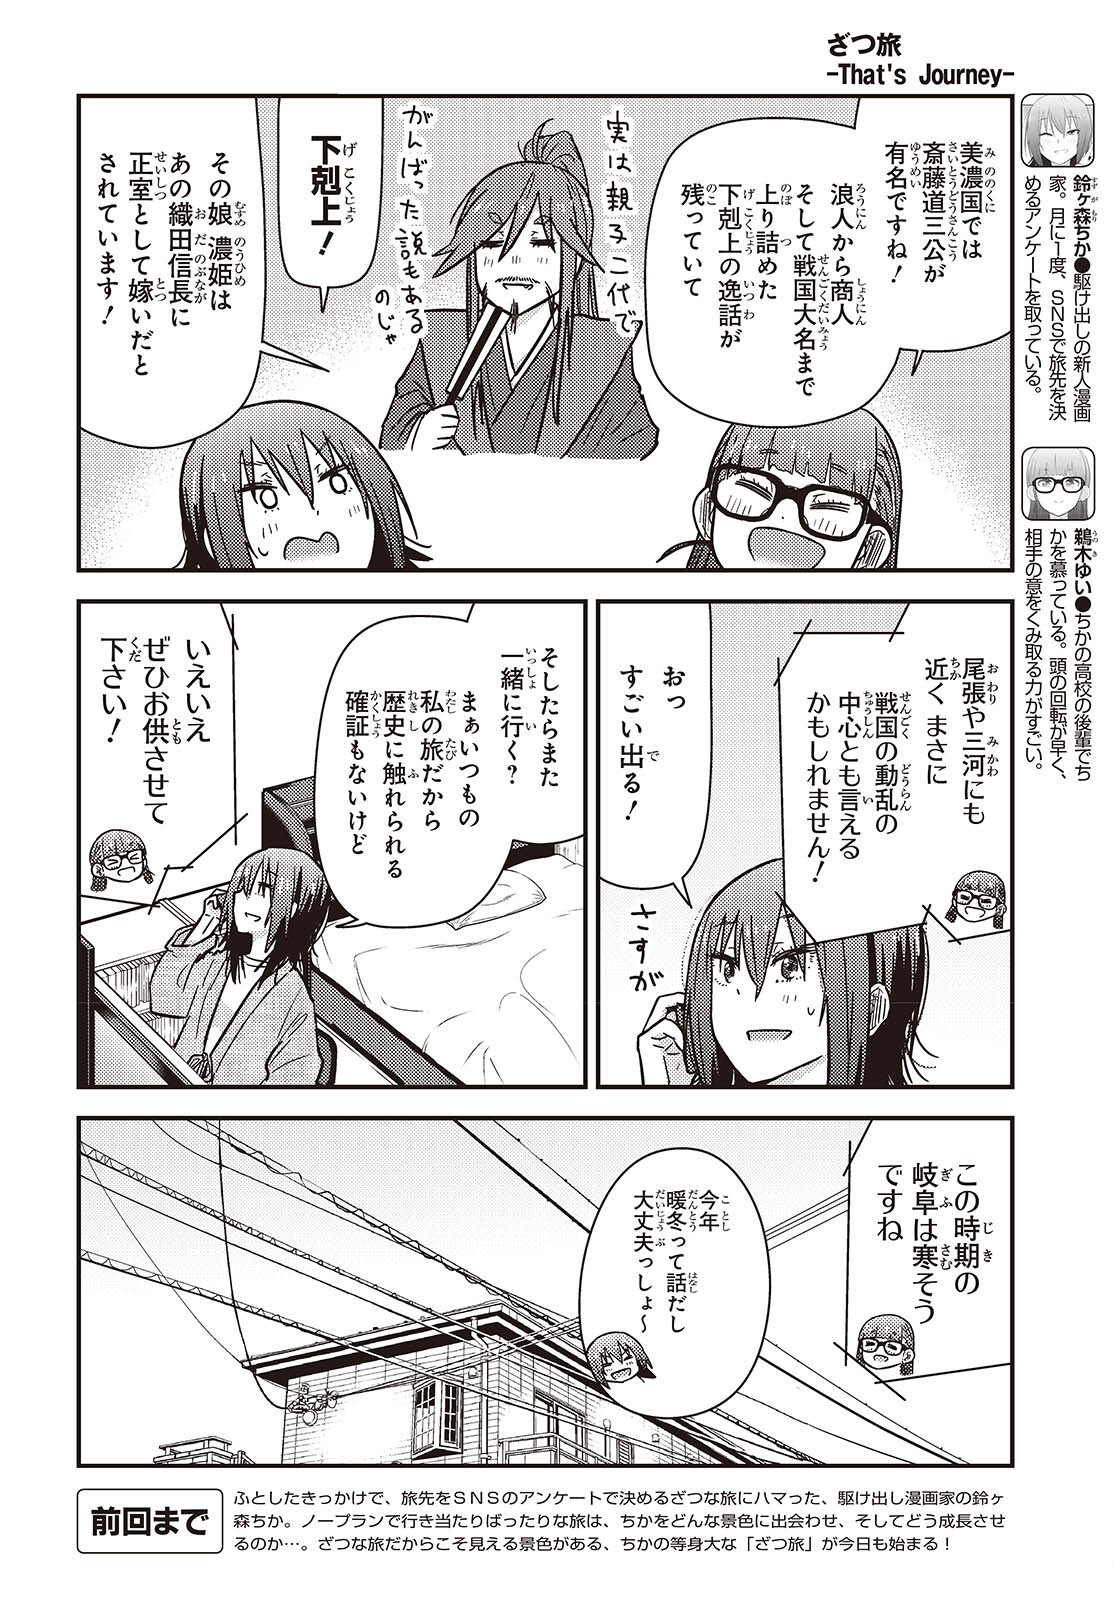 ざつ旅-That's Journey- 第36話 - Page 2